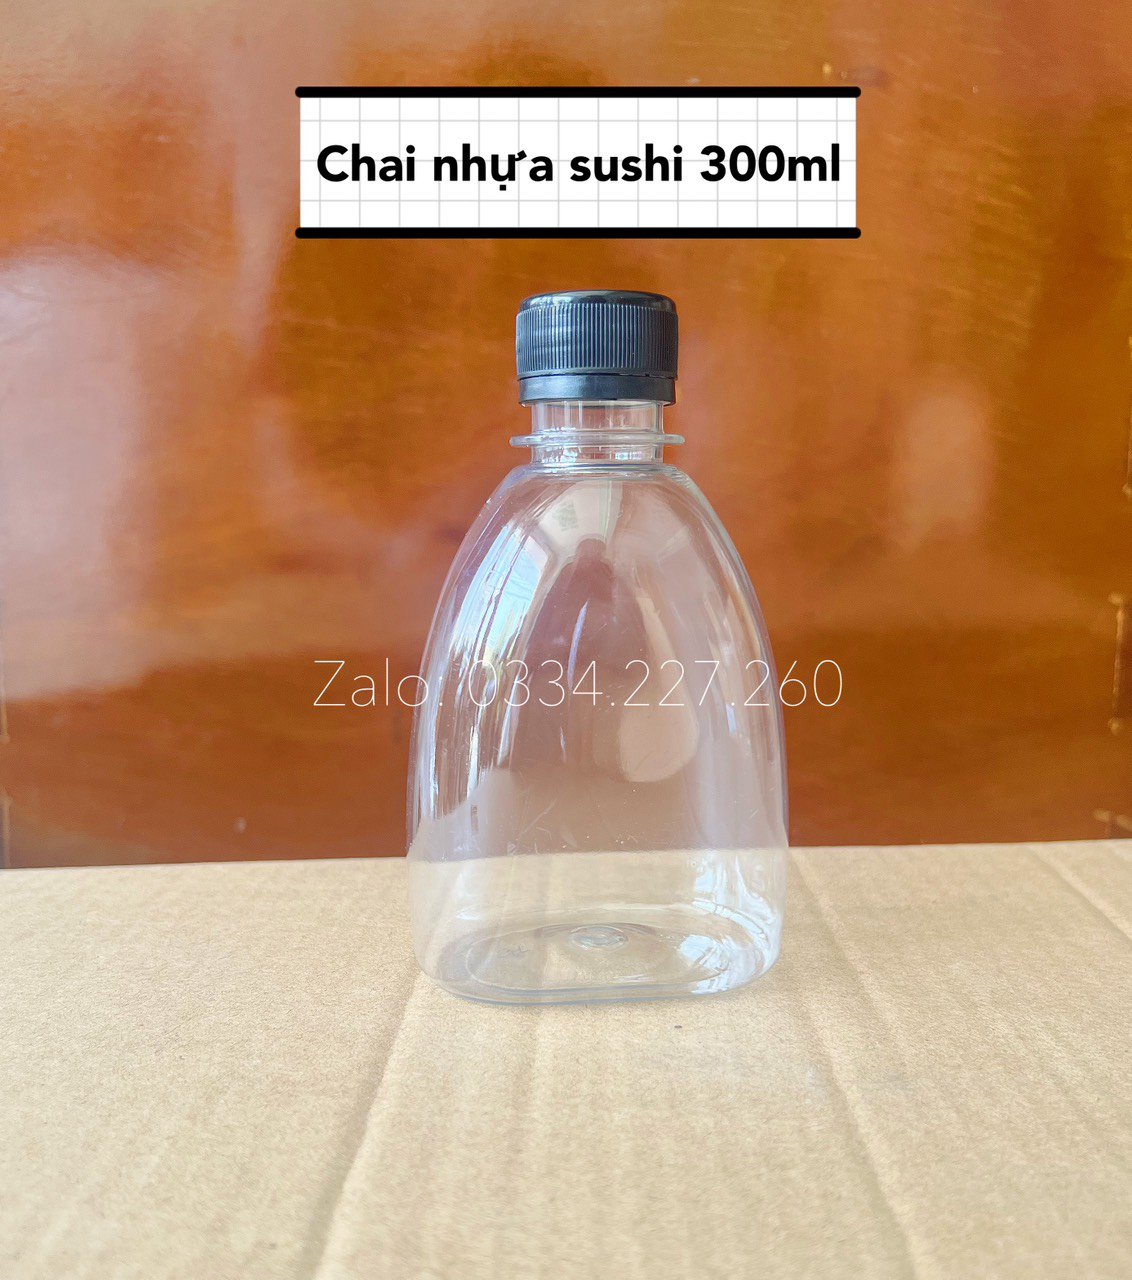 Chai nhựa sushi 300ml